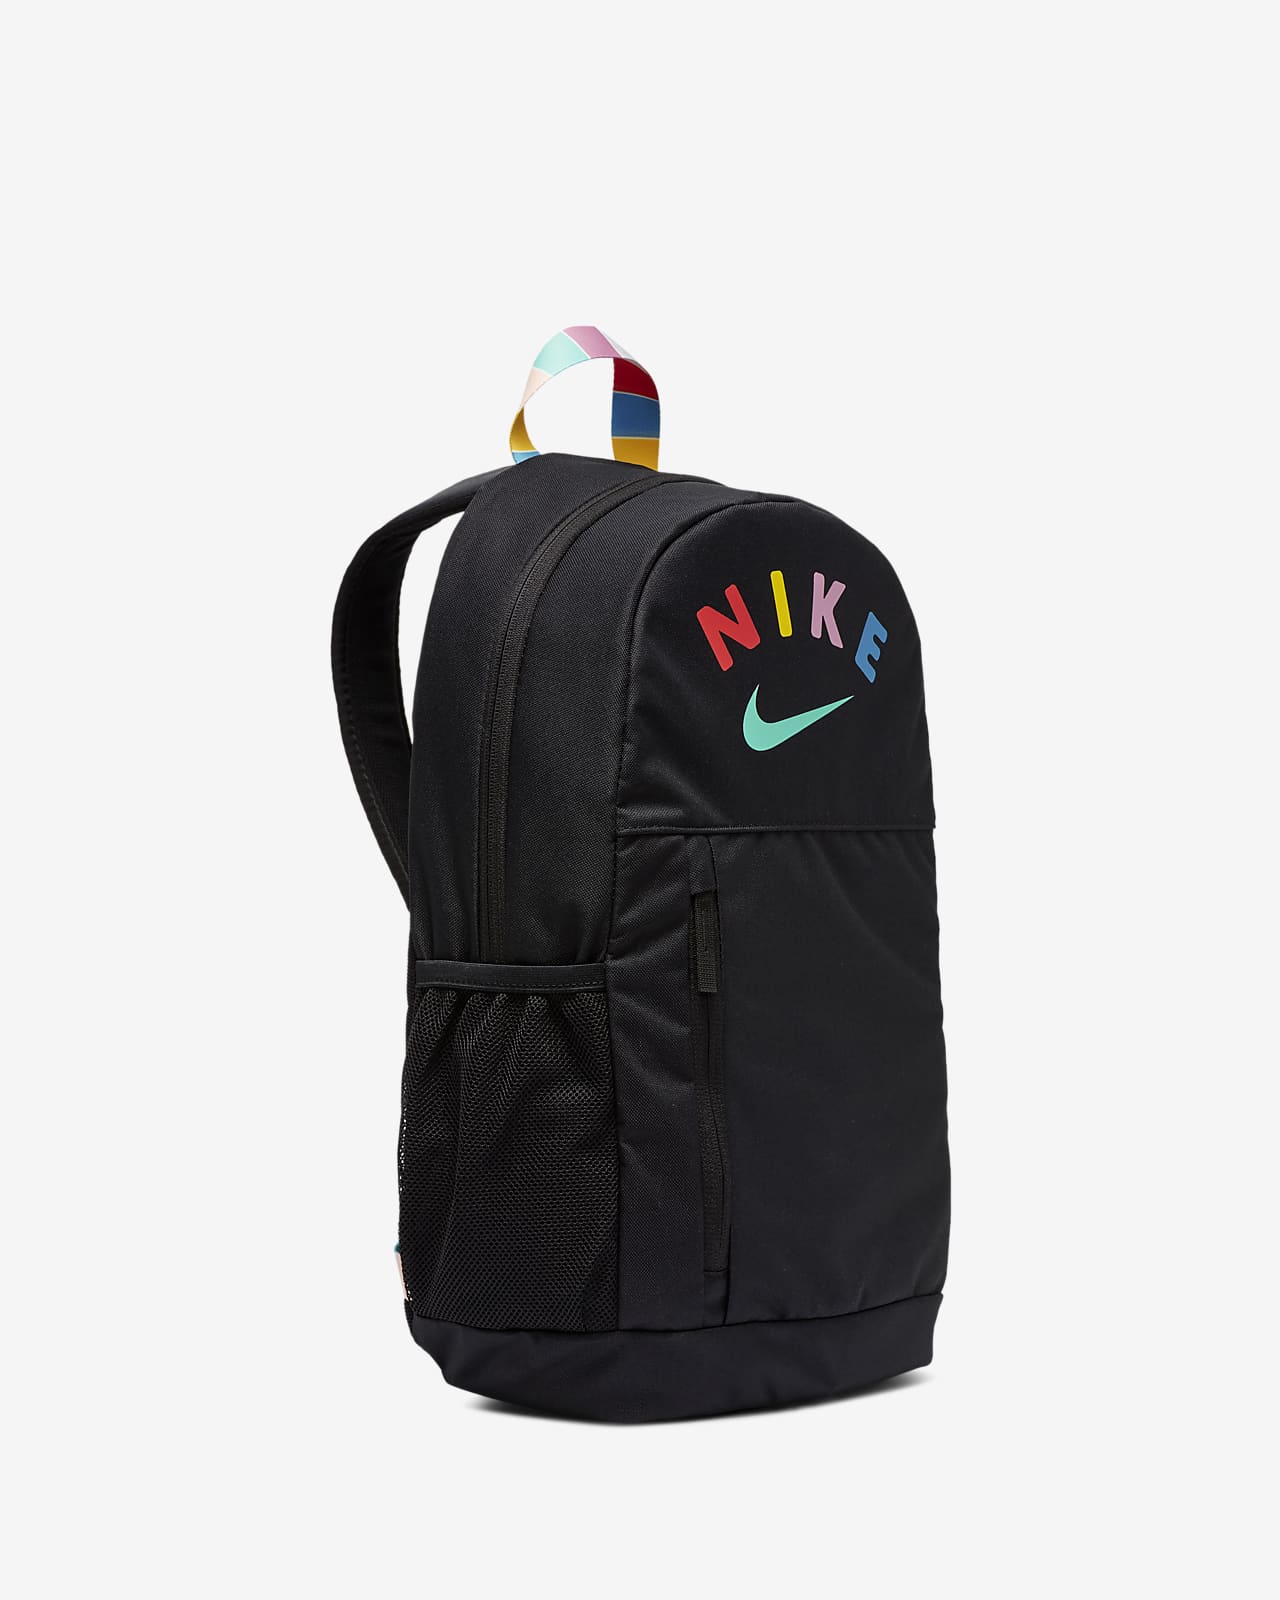 nike colorful backpack